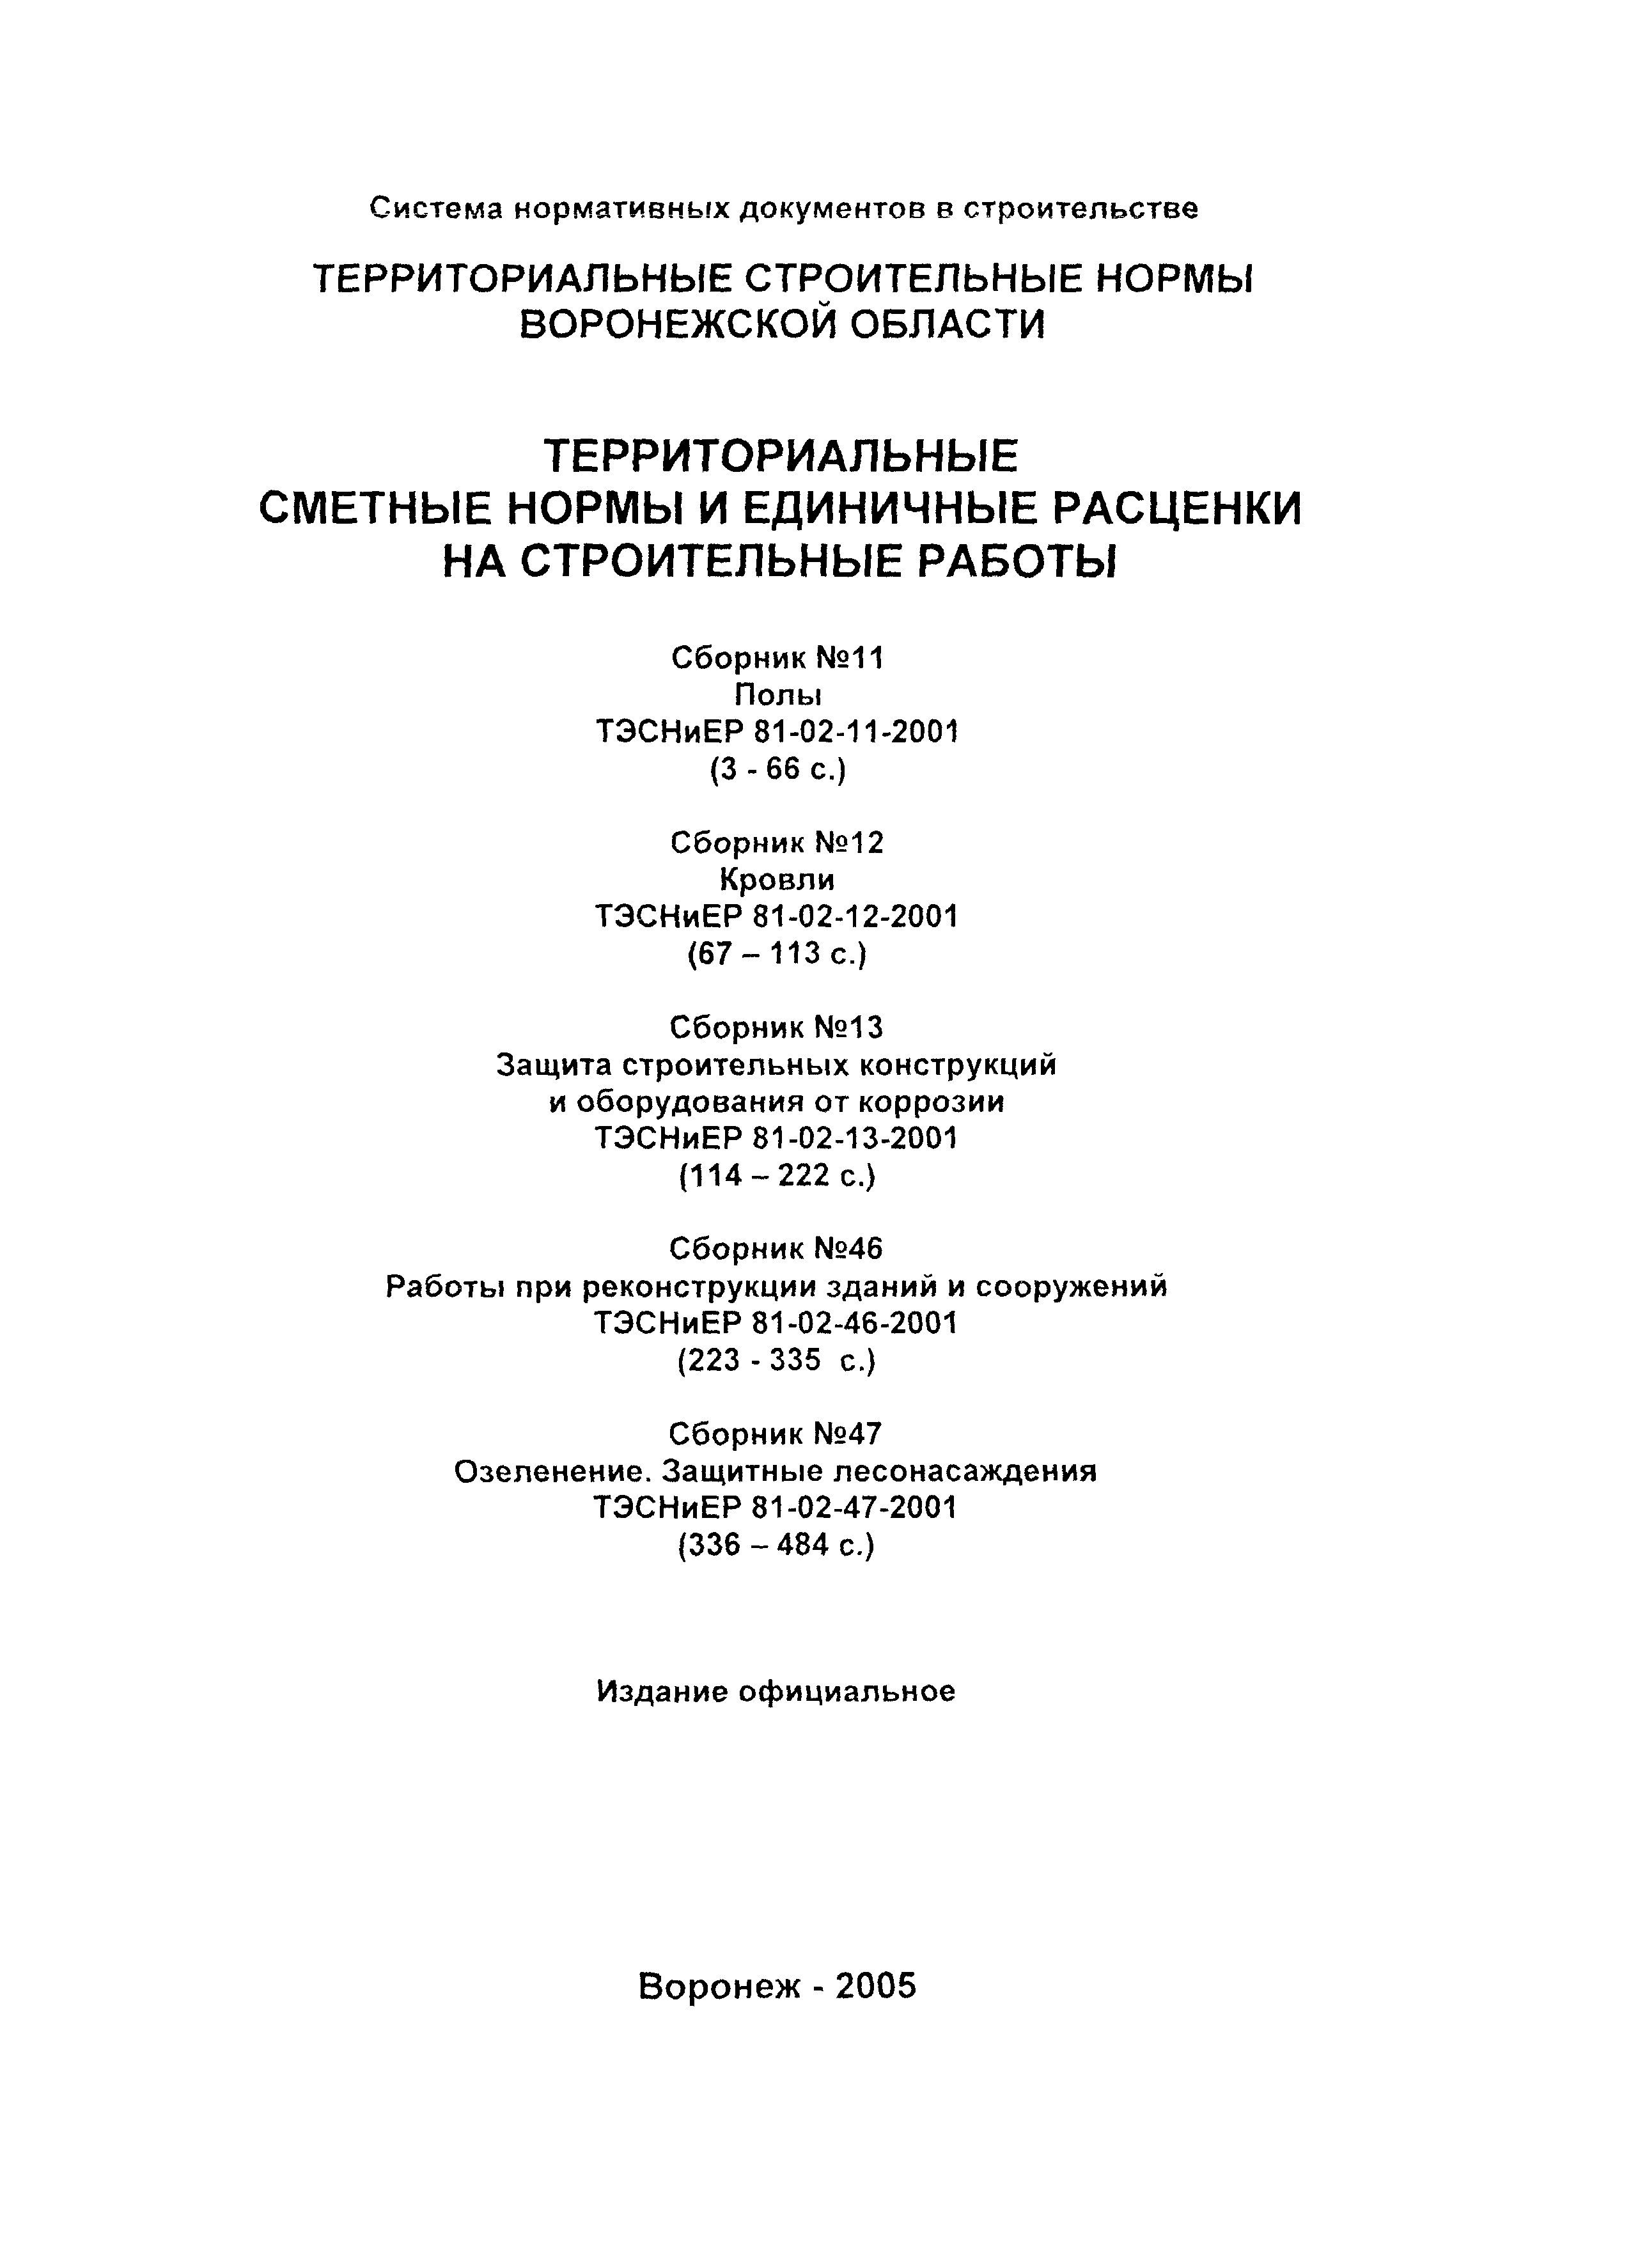 ТЭСНиЕР Воронежская область 81-02-46-2001